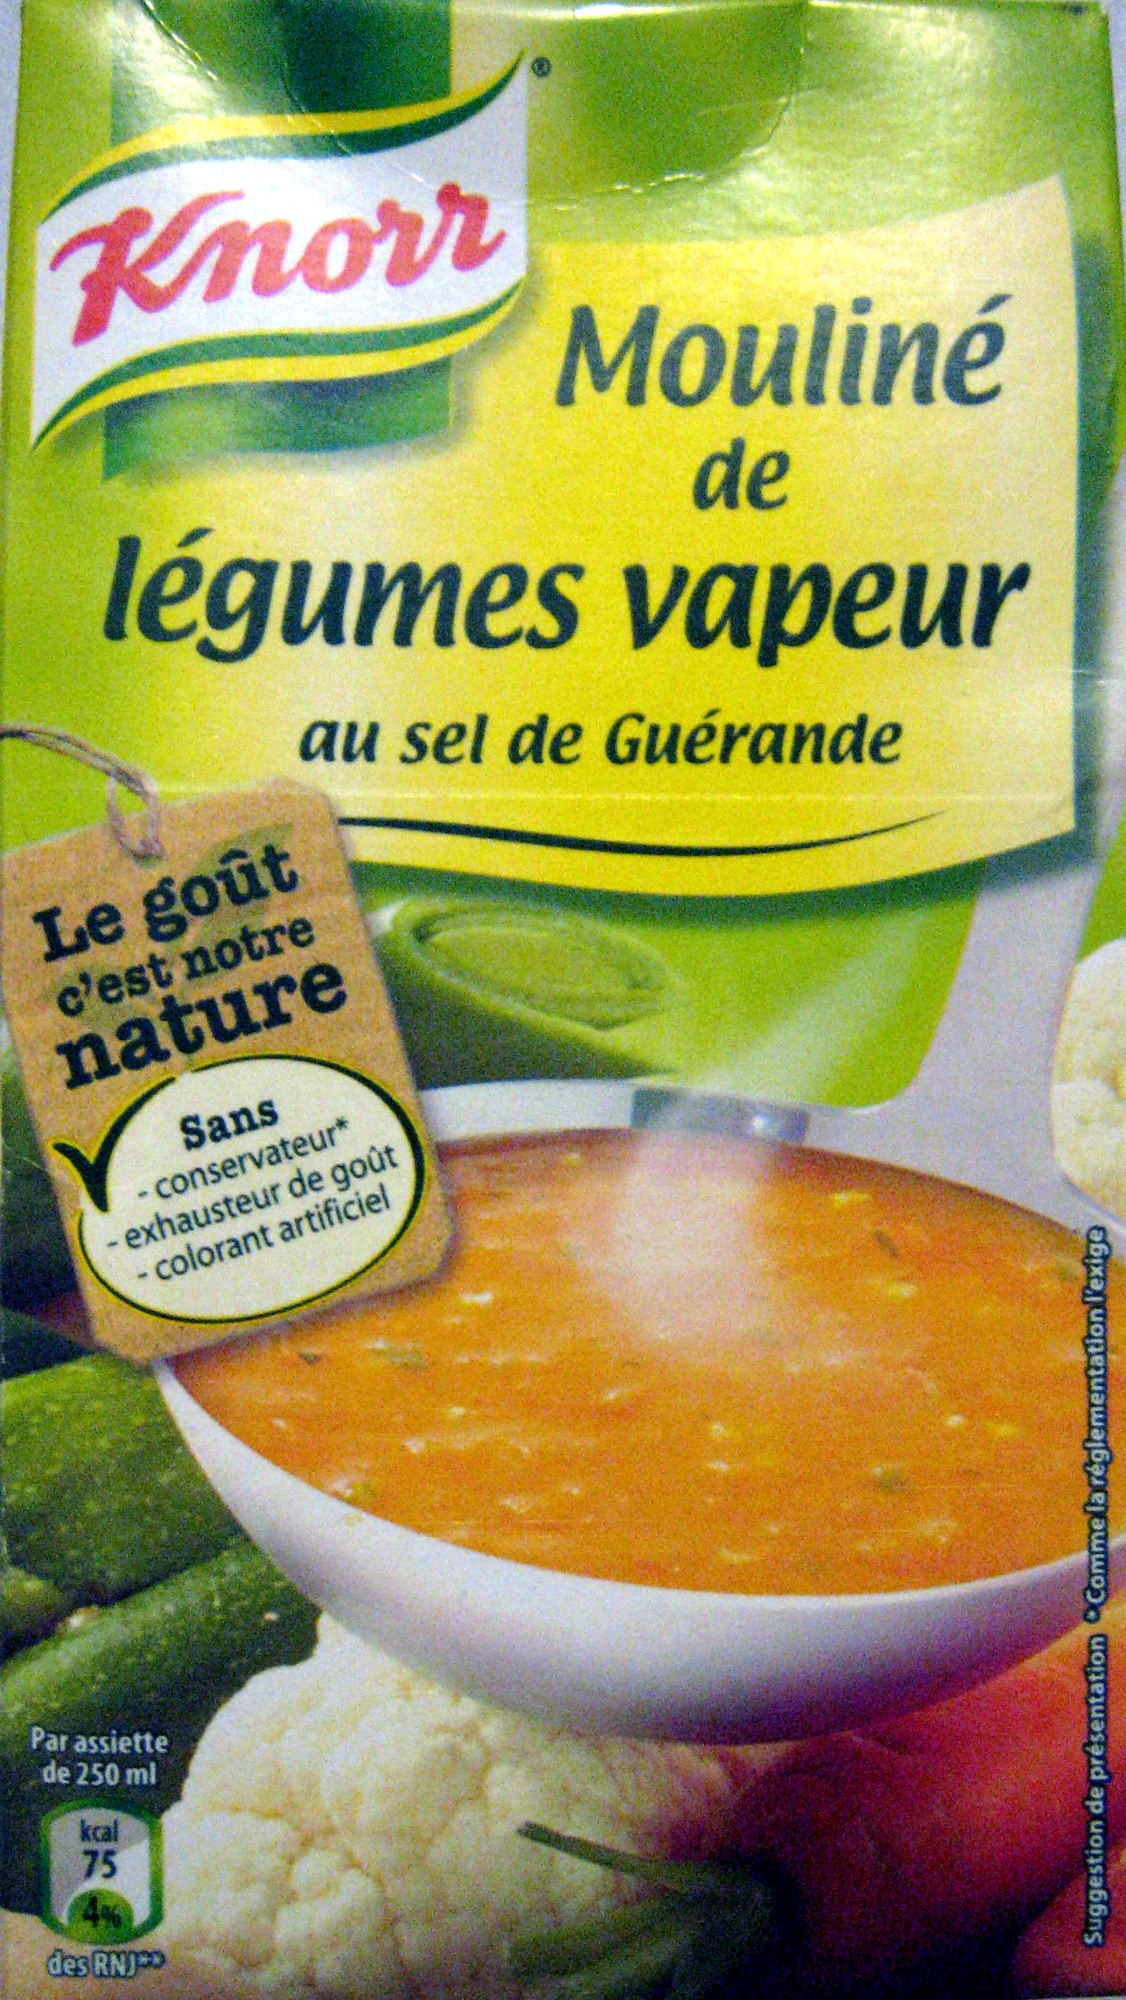 Mouliné de légumes vapeur au sel de Guérande Knorr - Product - fr